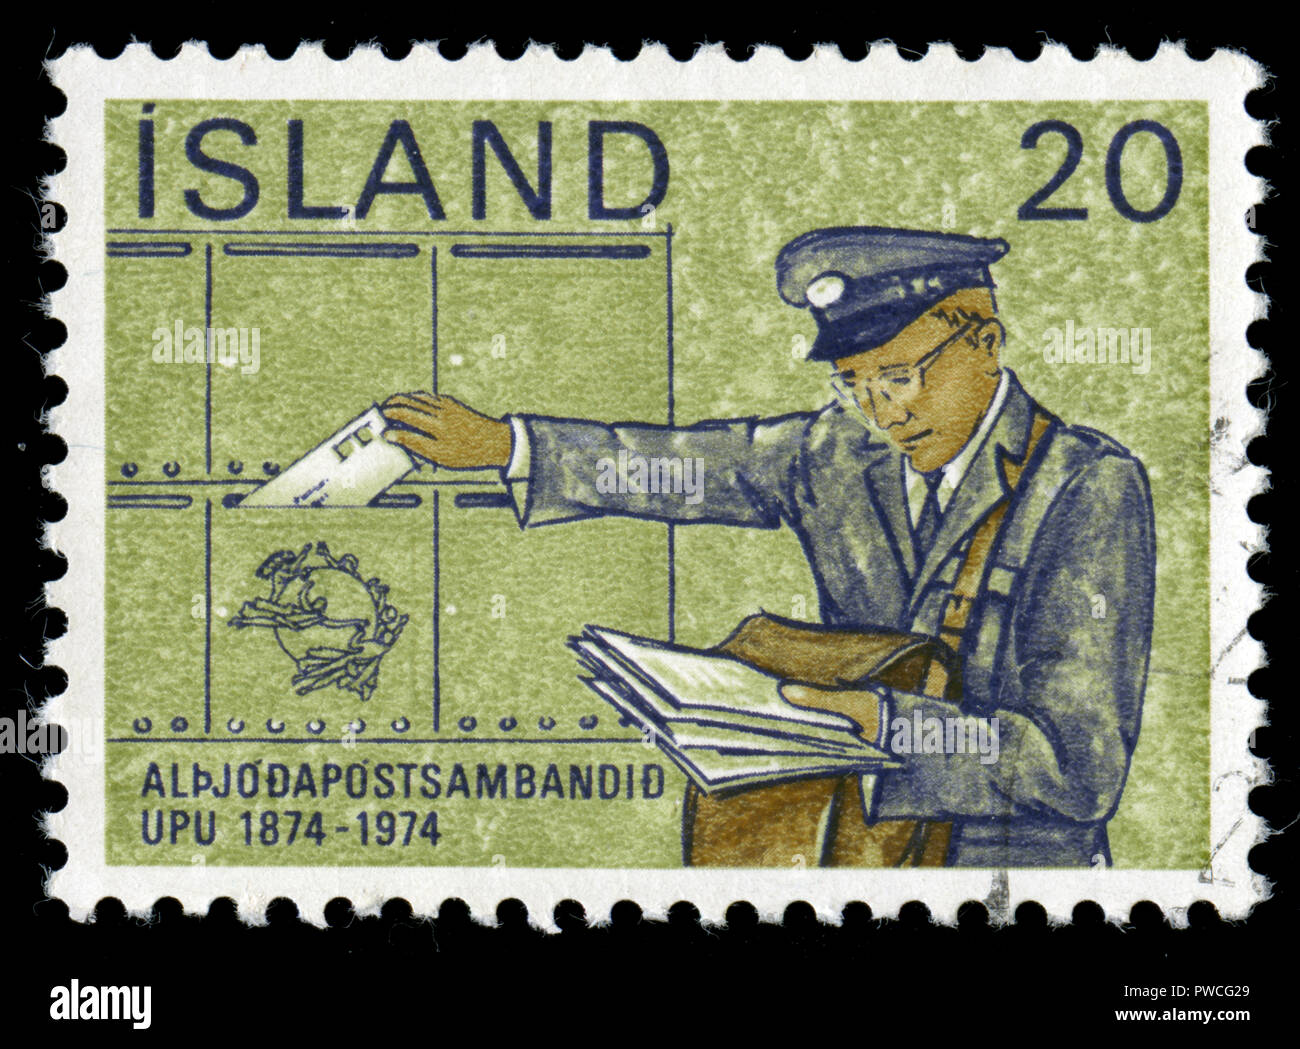 Con timbro postale timbro dall'Islanda nell'U.P.U. (Unione Postale Universale), Serie Centary rilasciati nel 1974 Foto Stock